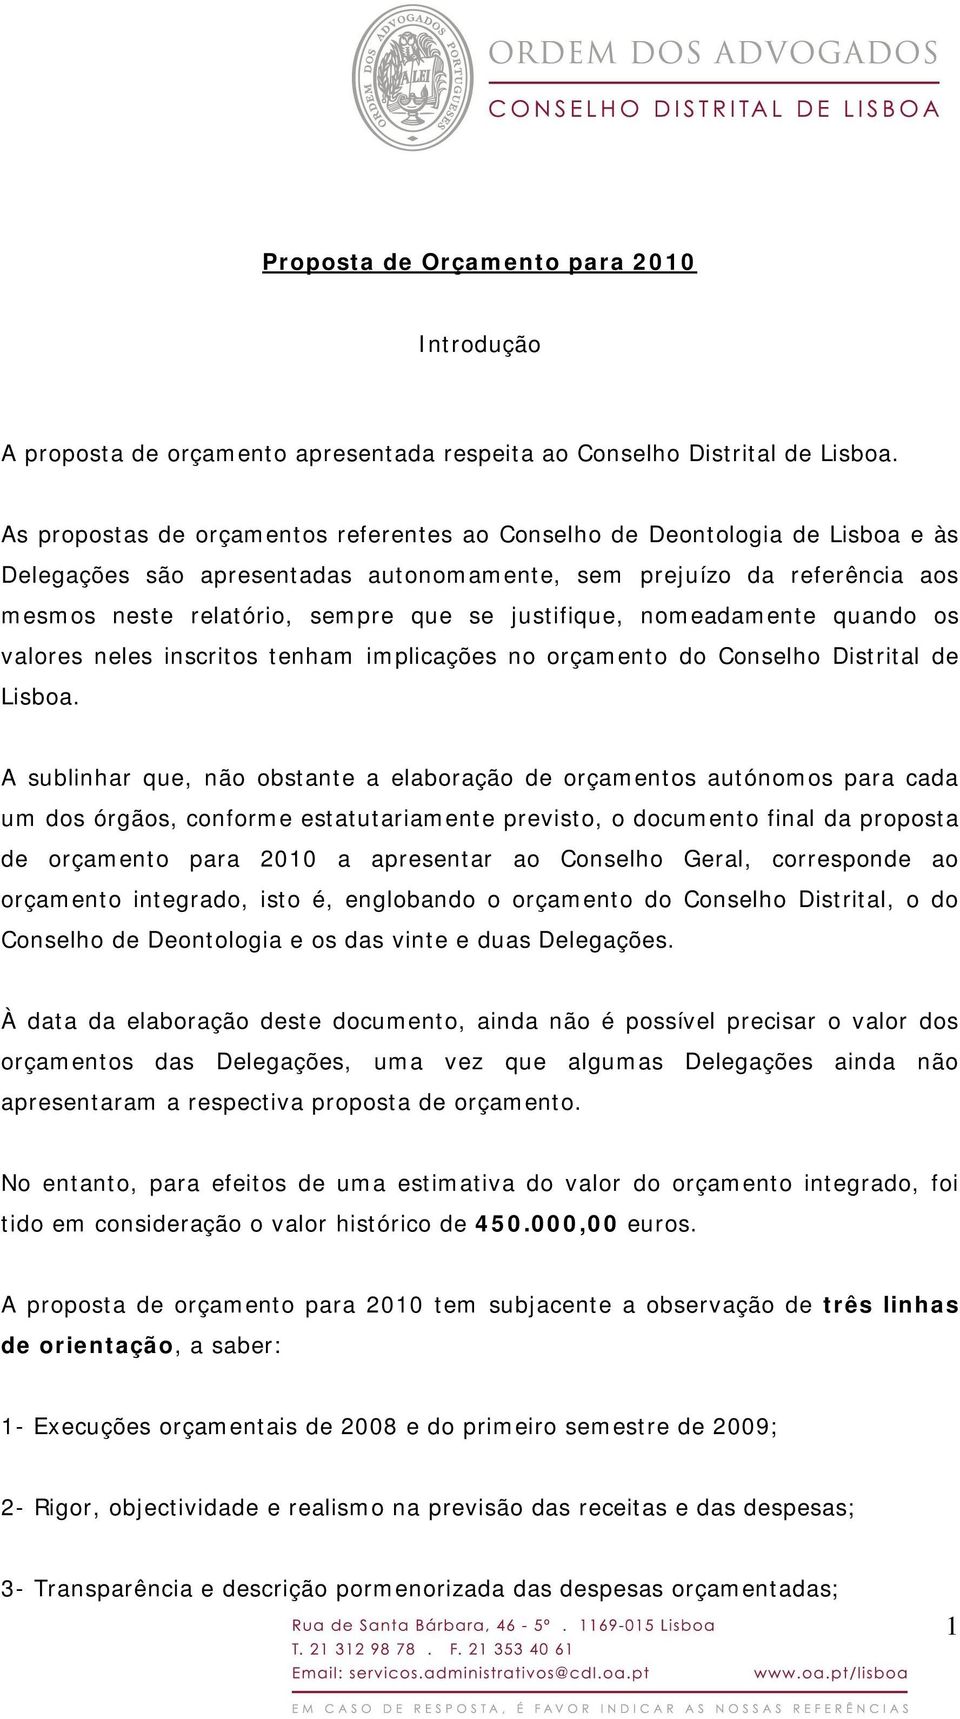 justifique, nomeadamente quando os valores neles inscritos tenham implicações no orçamento do Conselho Distrital de Lisboa.